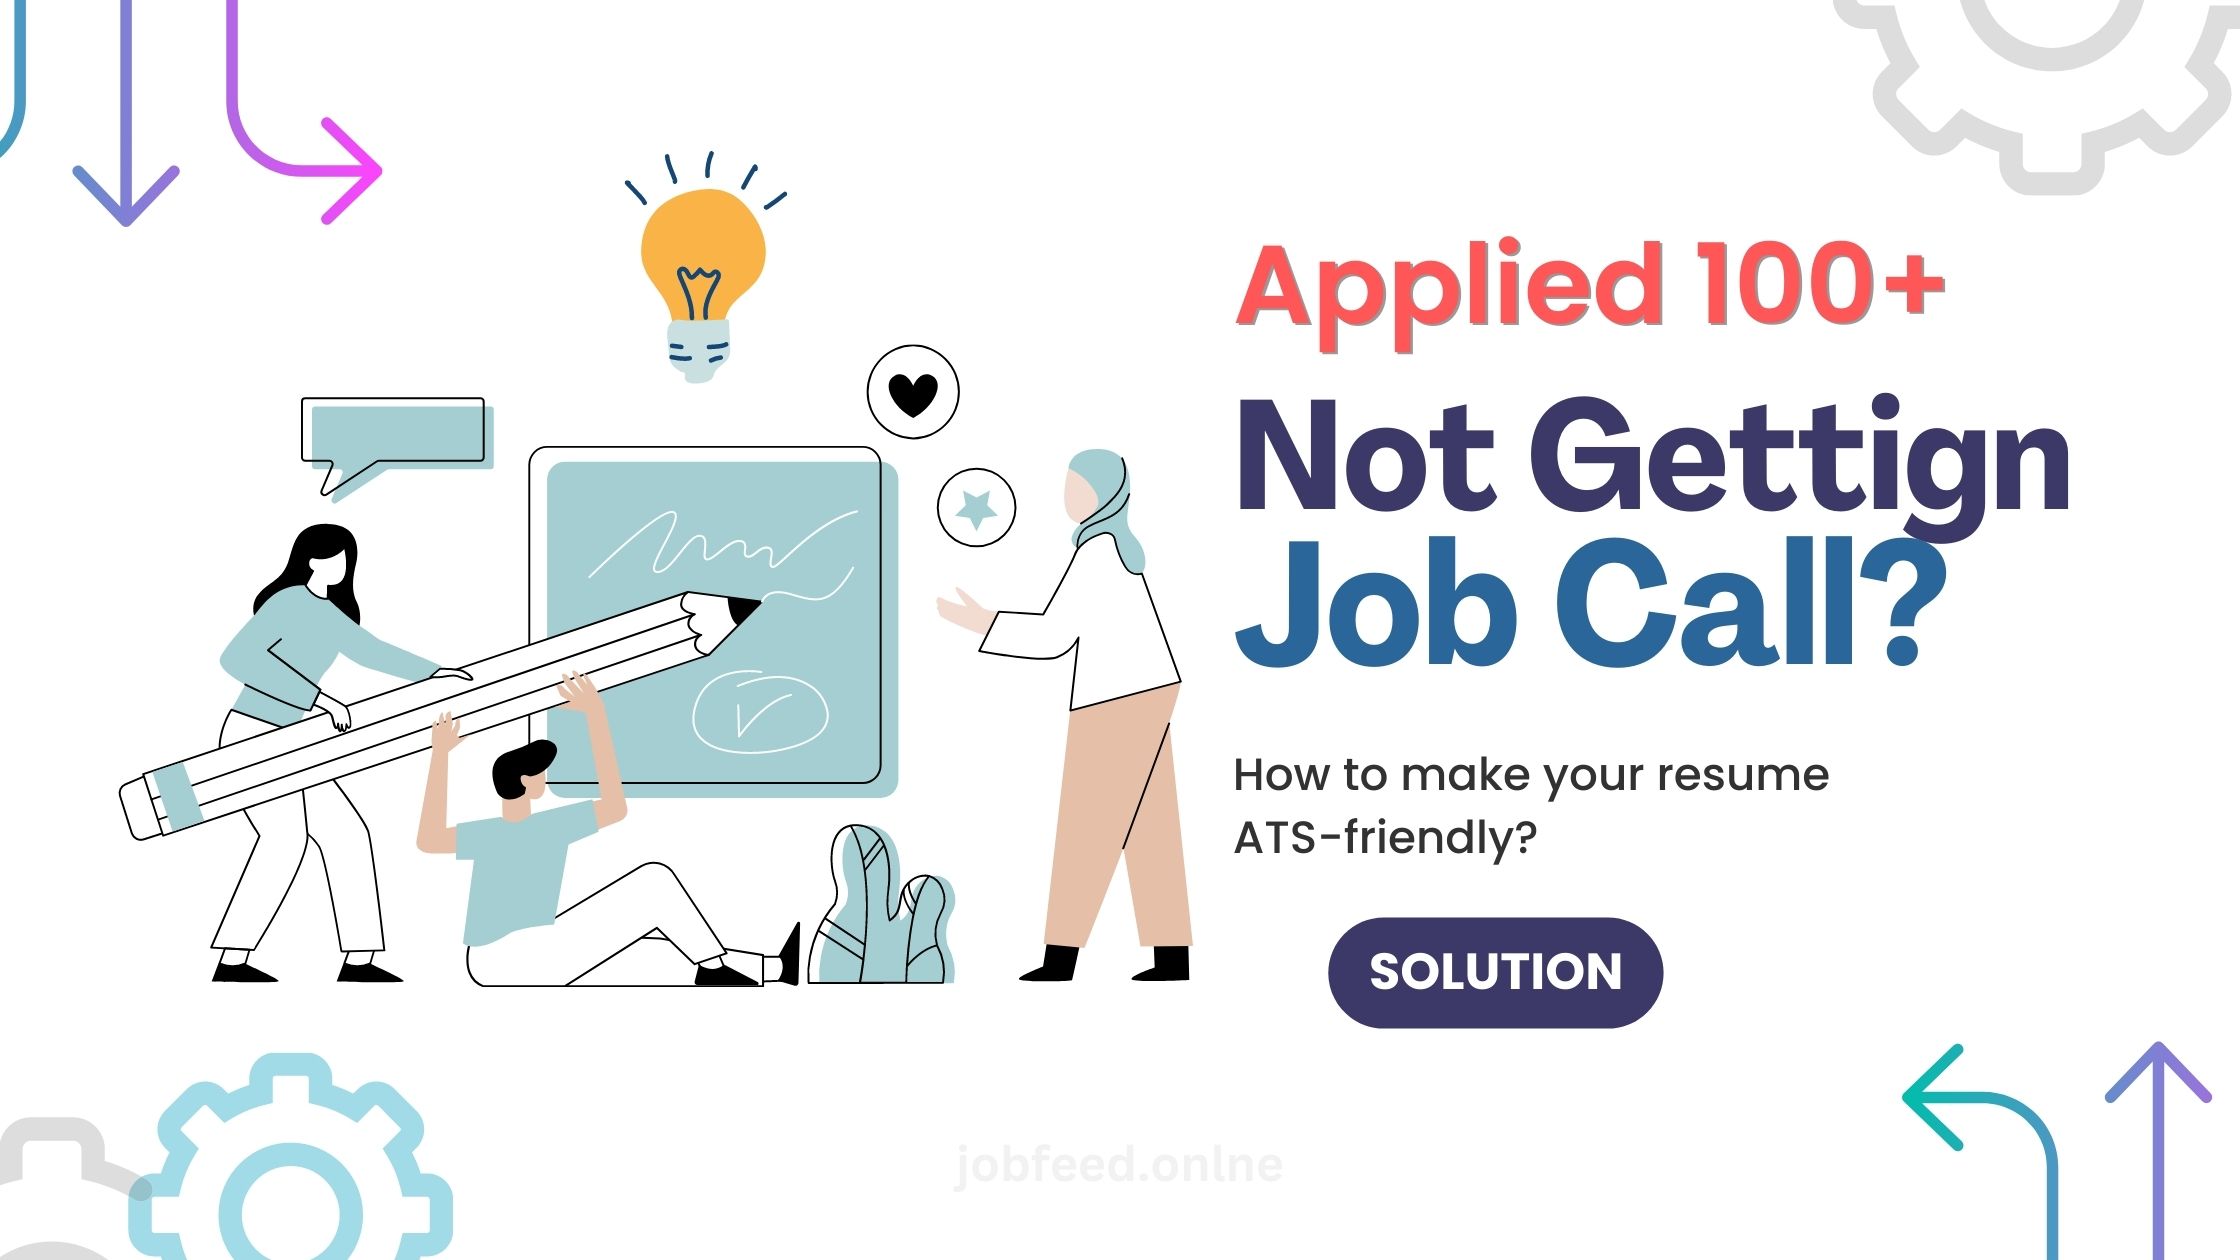 मेरा सीवी क्यों नहीं चुना जा रहा है? 100+ नौकरियों के लिए आवेदन करने के बाद भी? एटीएस को समझाया